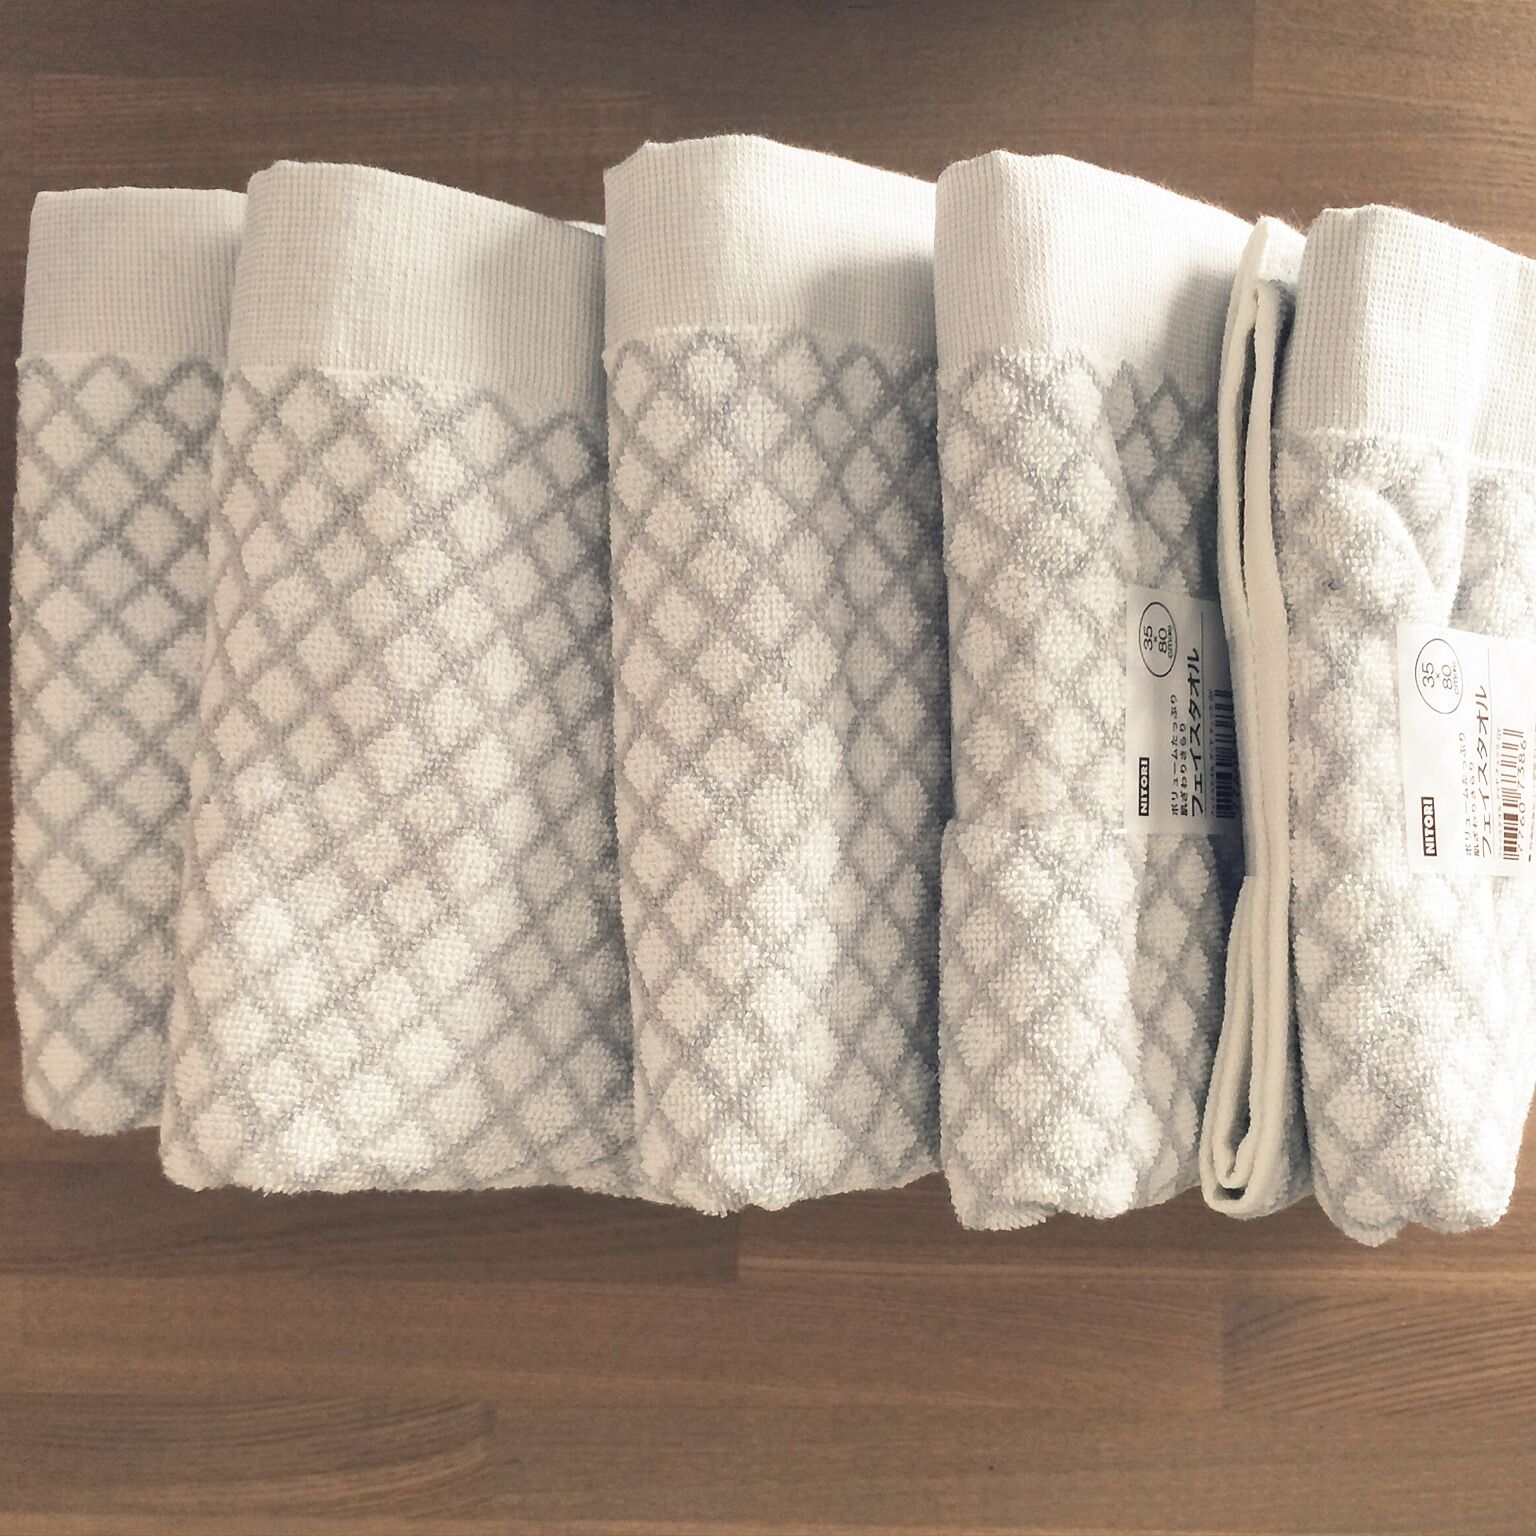 こちらは、ニトリのグレーのチェック柄のタオルです。デザイン性もあり、洗面所のタオルをすべて統一することで、より洗練された印象になっていますね。